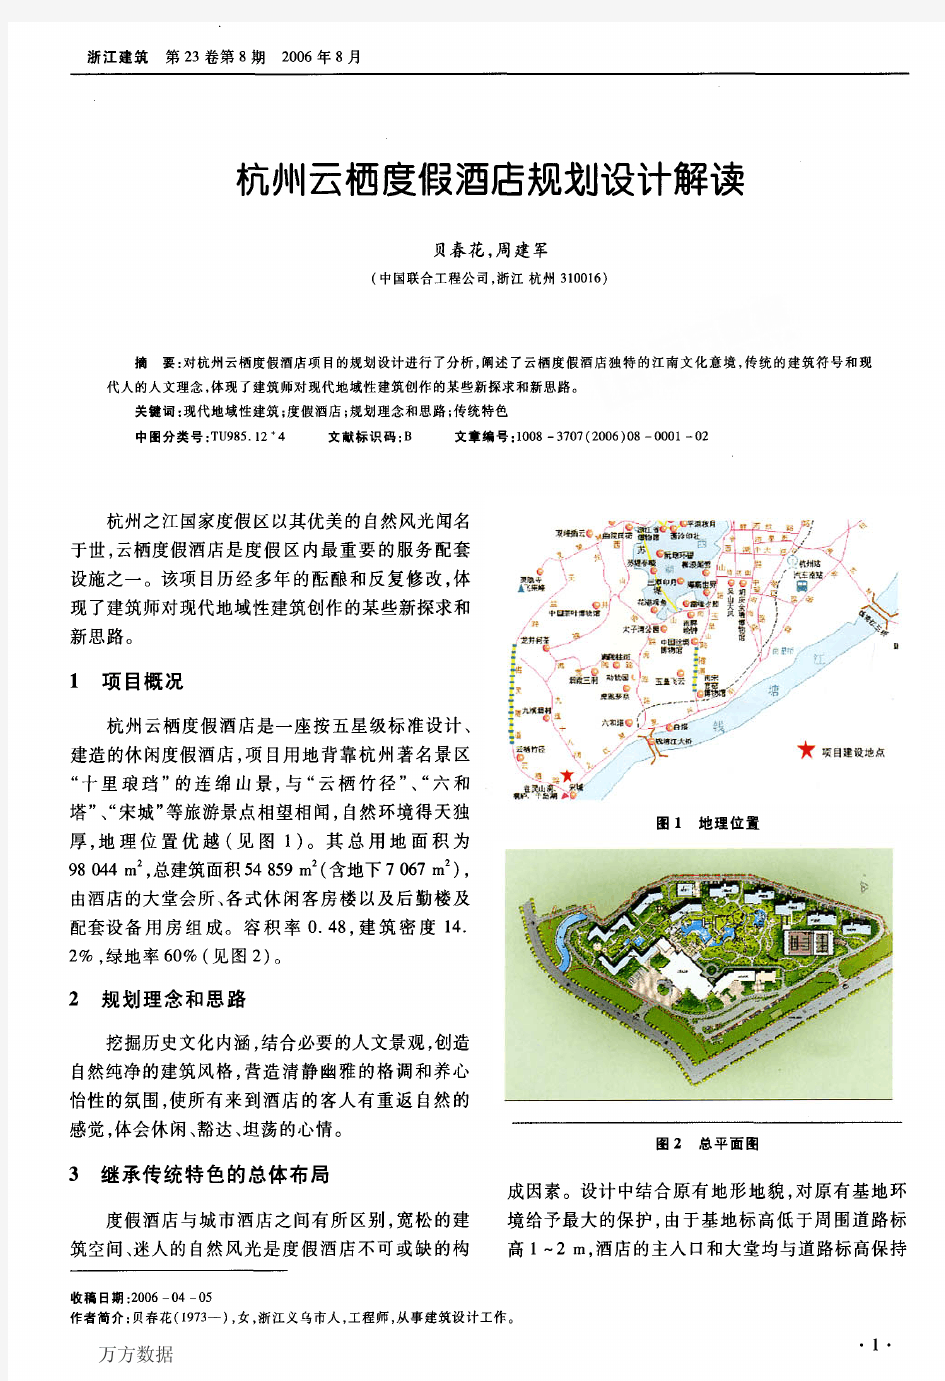 杭州云栖度假酒店规划设计解读